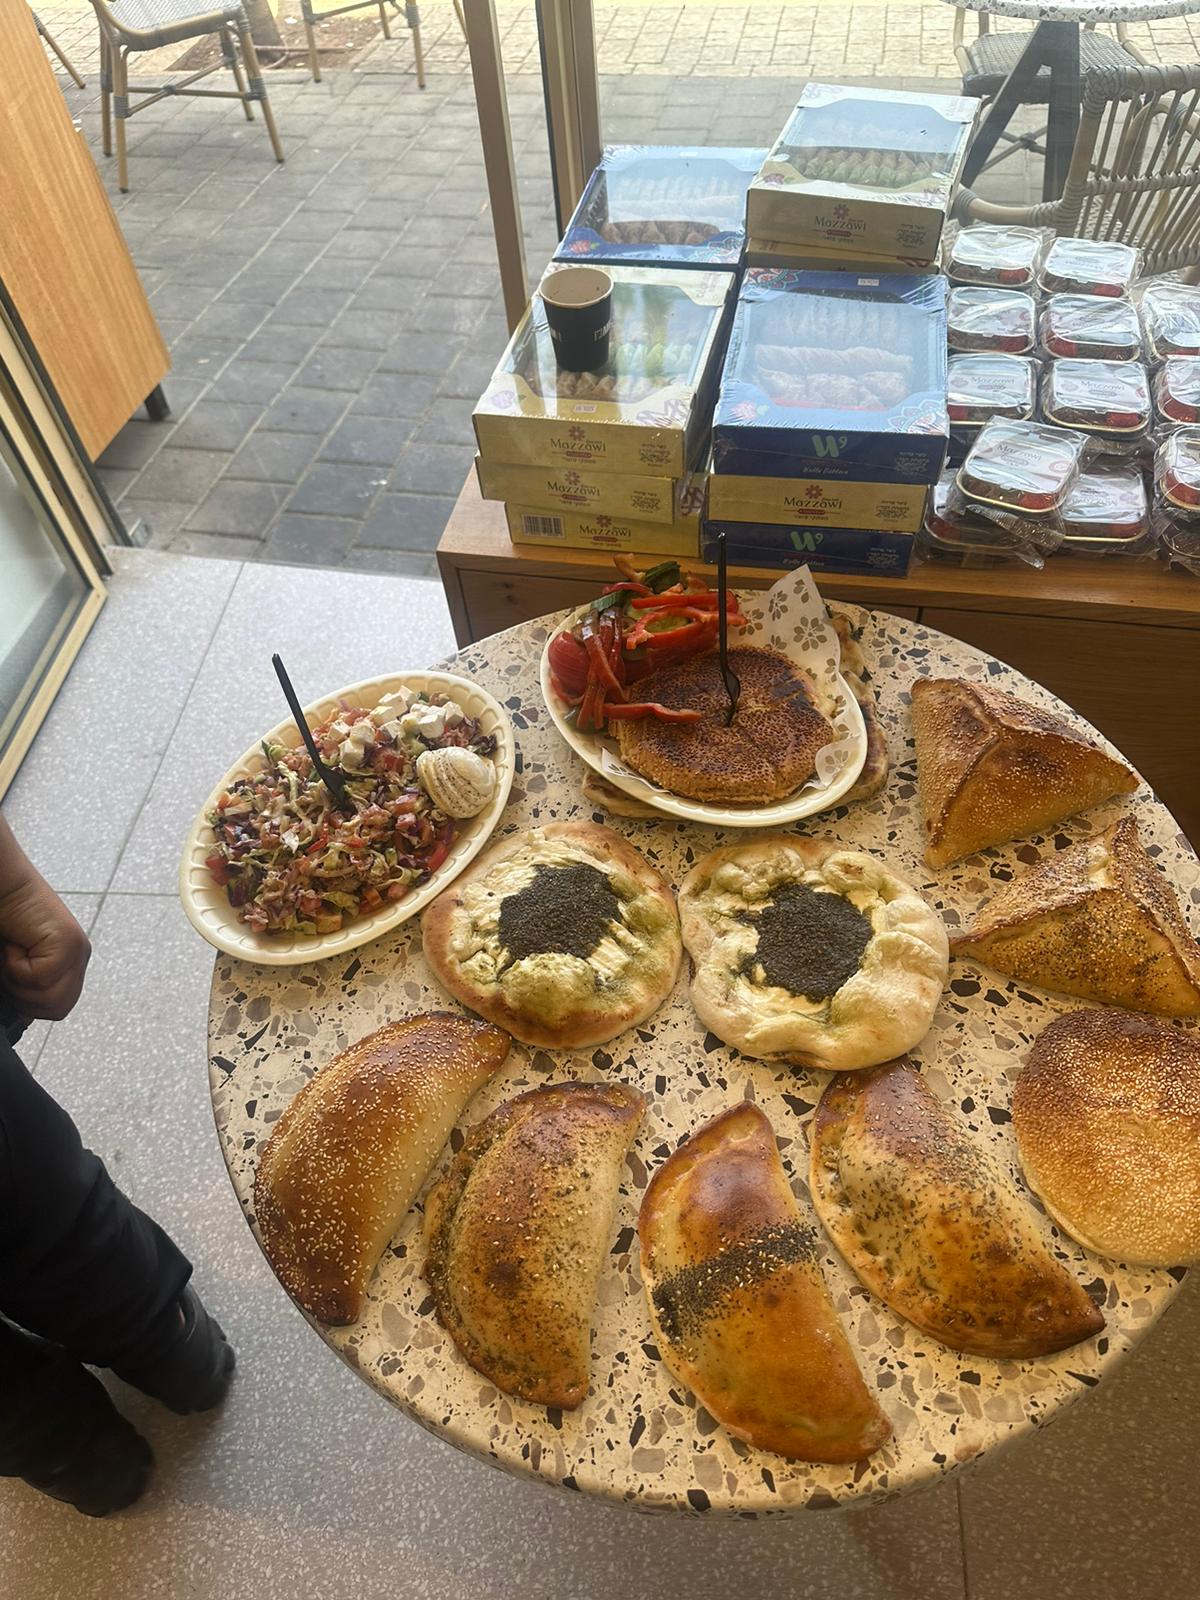  يافا: أشهى المعجنات والخبز المحلى بانتظاركم لدى مخبز أبو العافية 